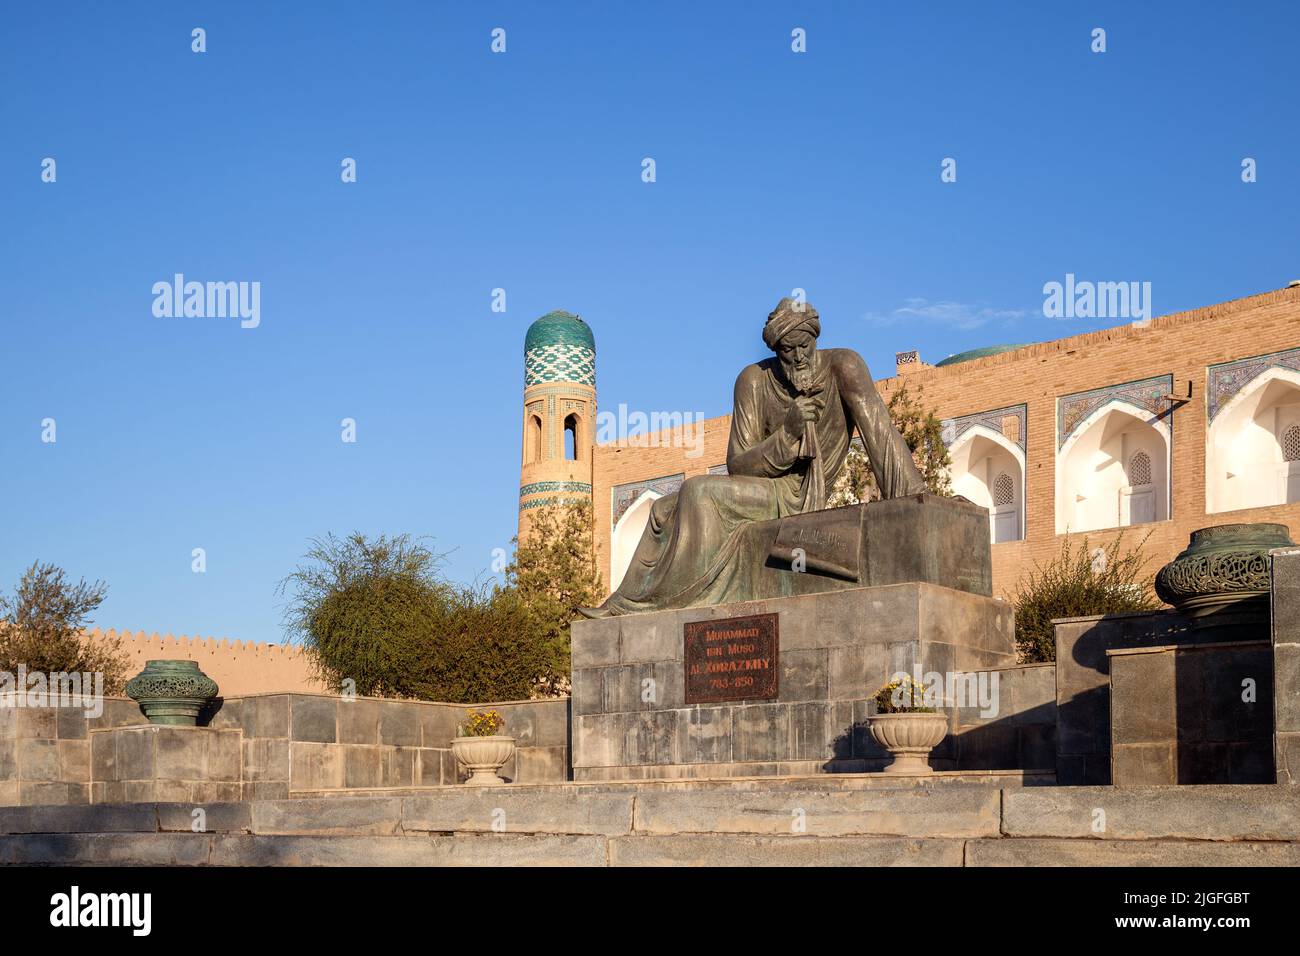 Khiva, Uzbekistán - Octubre, 2016: Monumento al destacado matemático de la Edad Media Muhammad ibn Musa al-Khwarizmi instalado en la puerta occidental de la misma Foto de stock